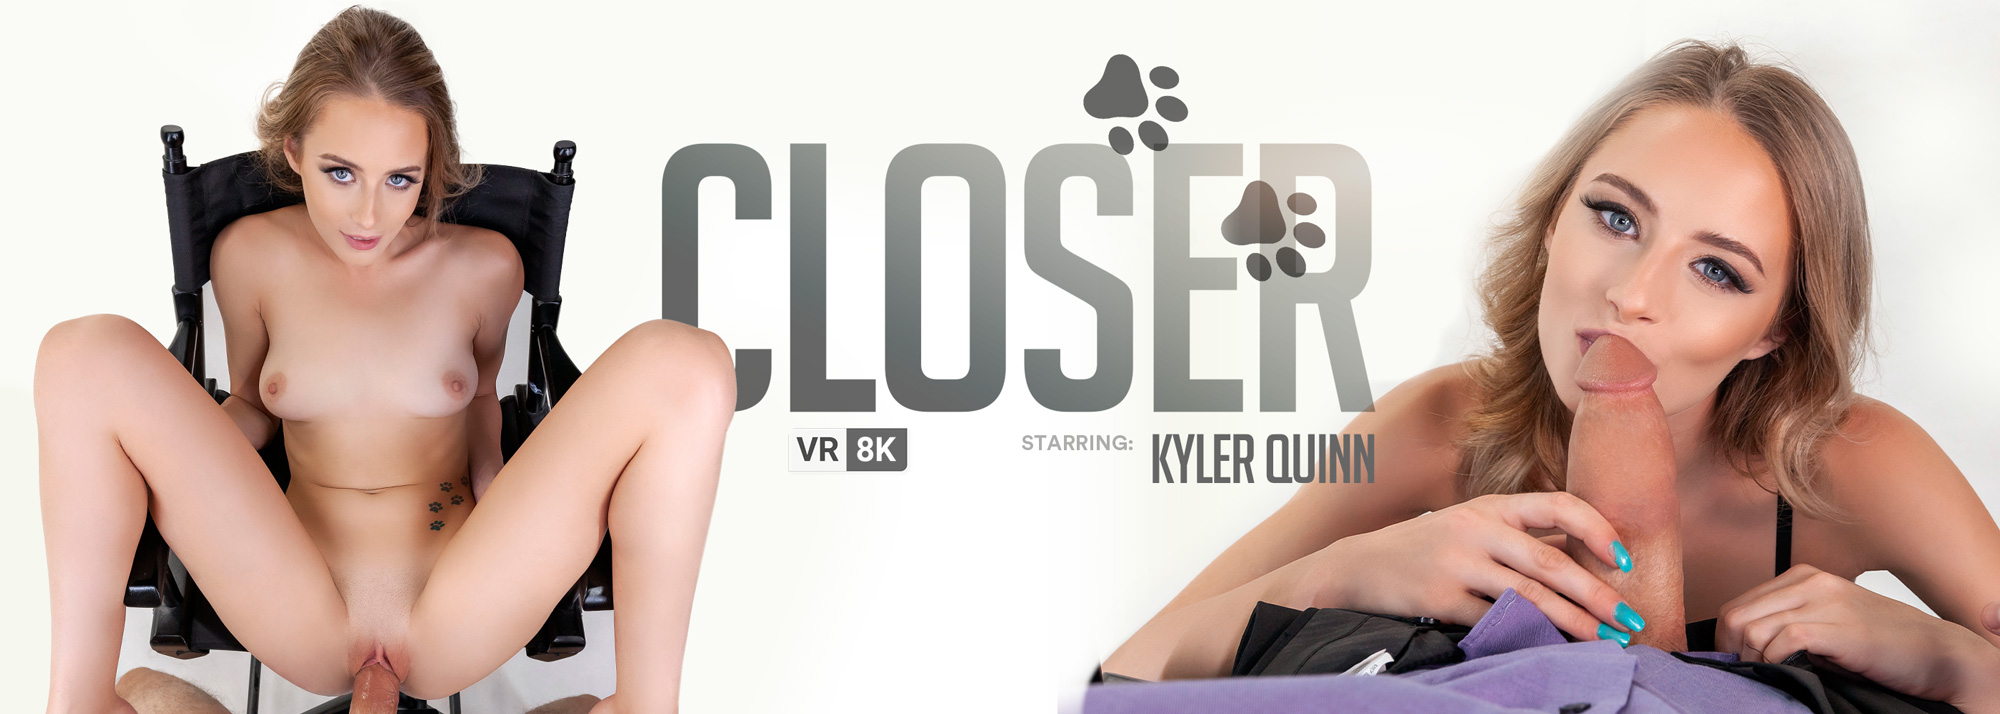 Kyler Quinn stars in VR Banger's scene Closer